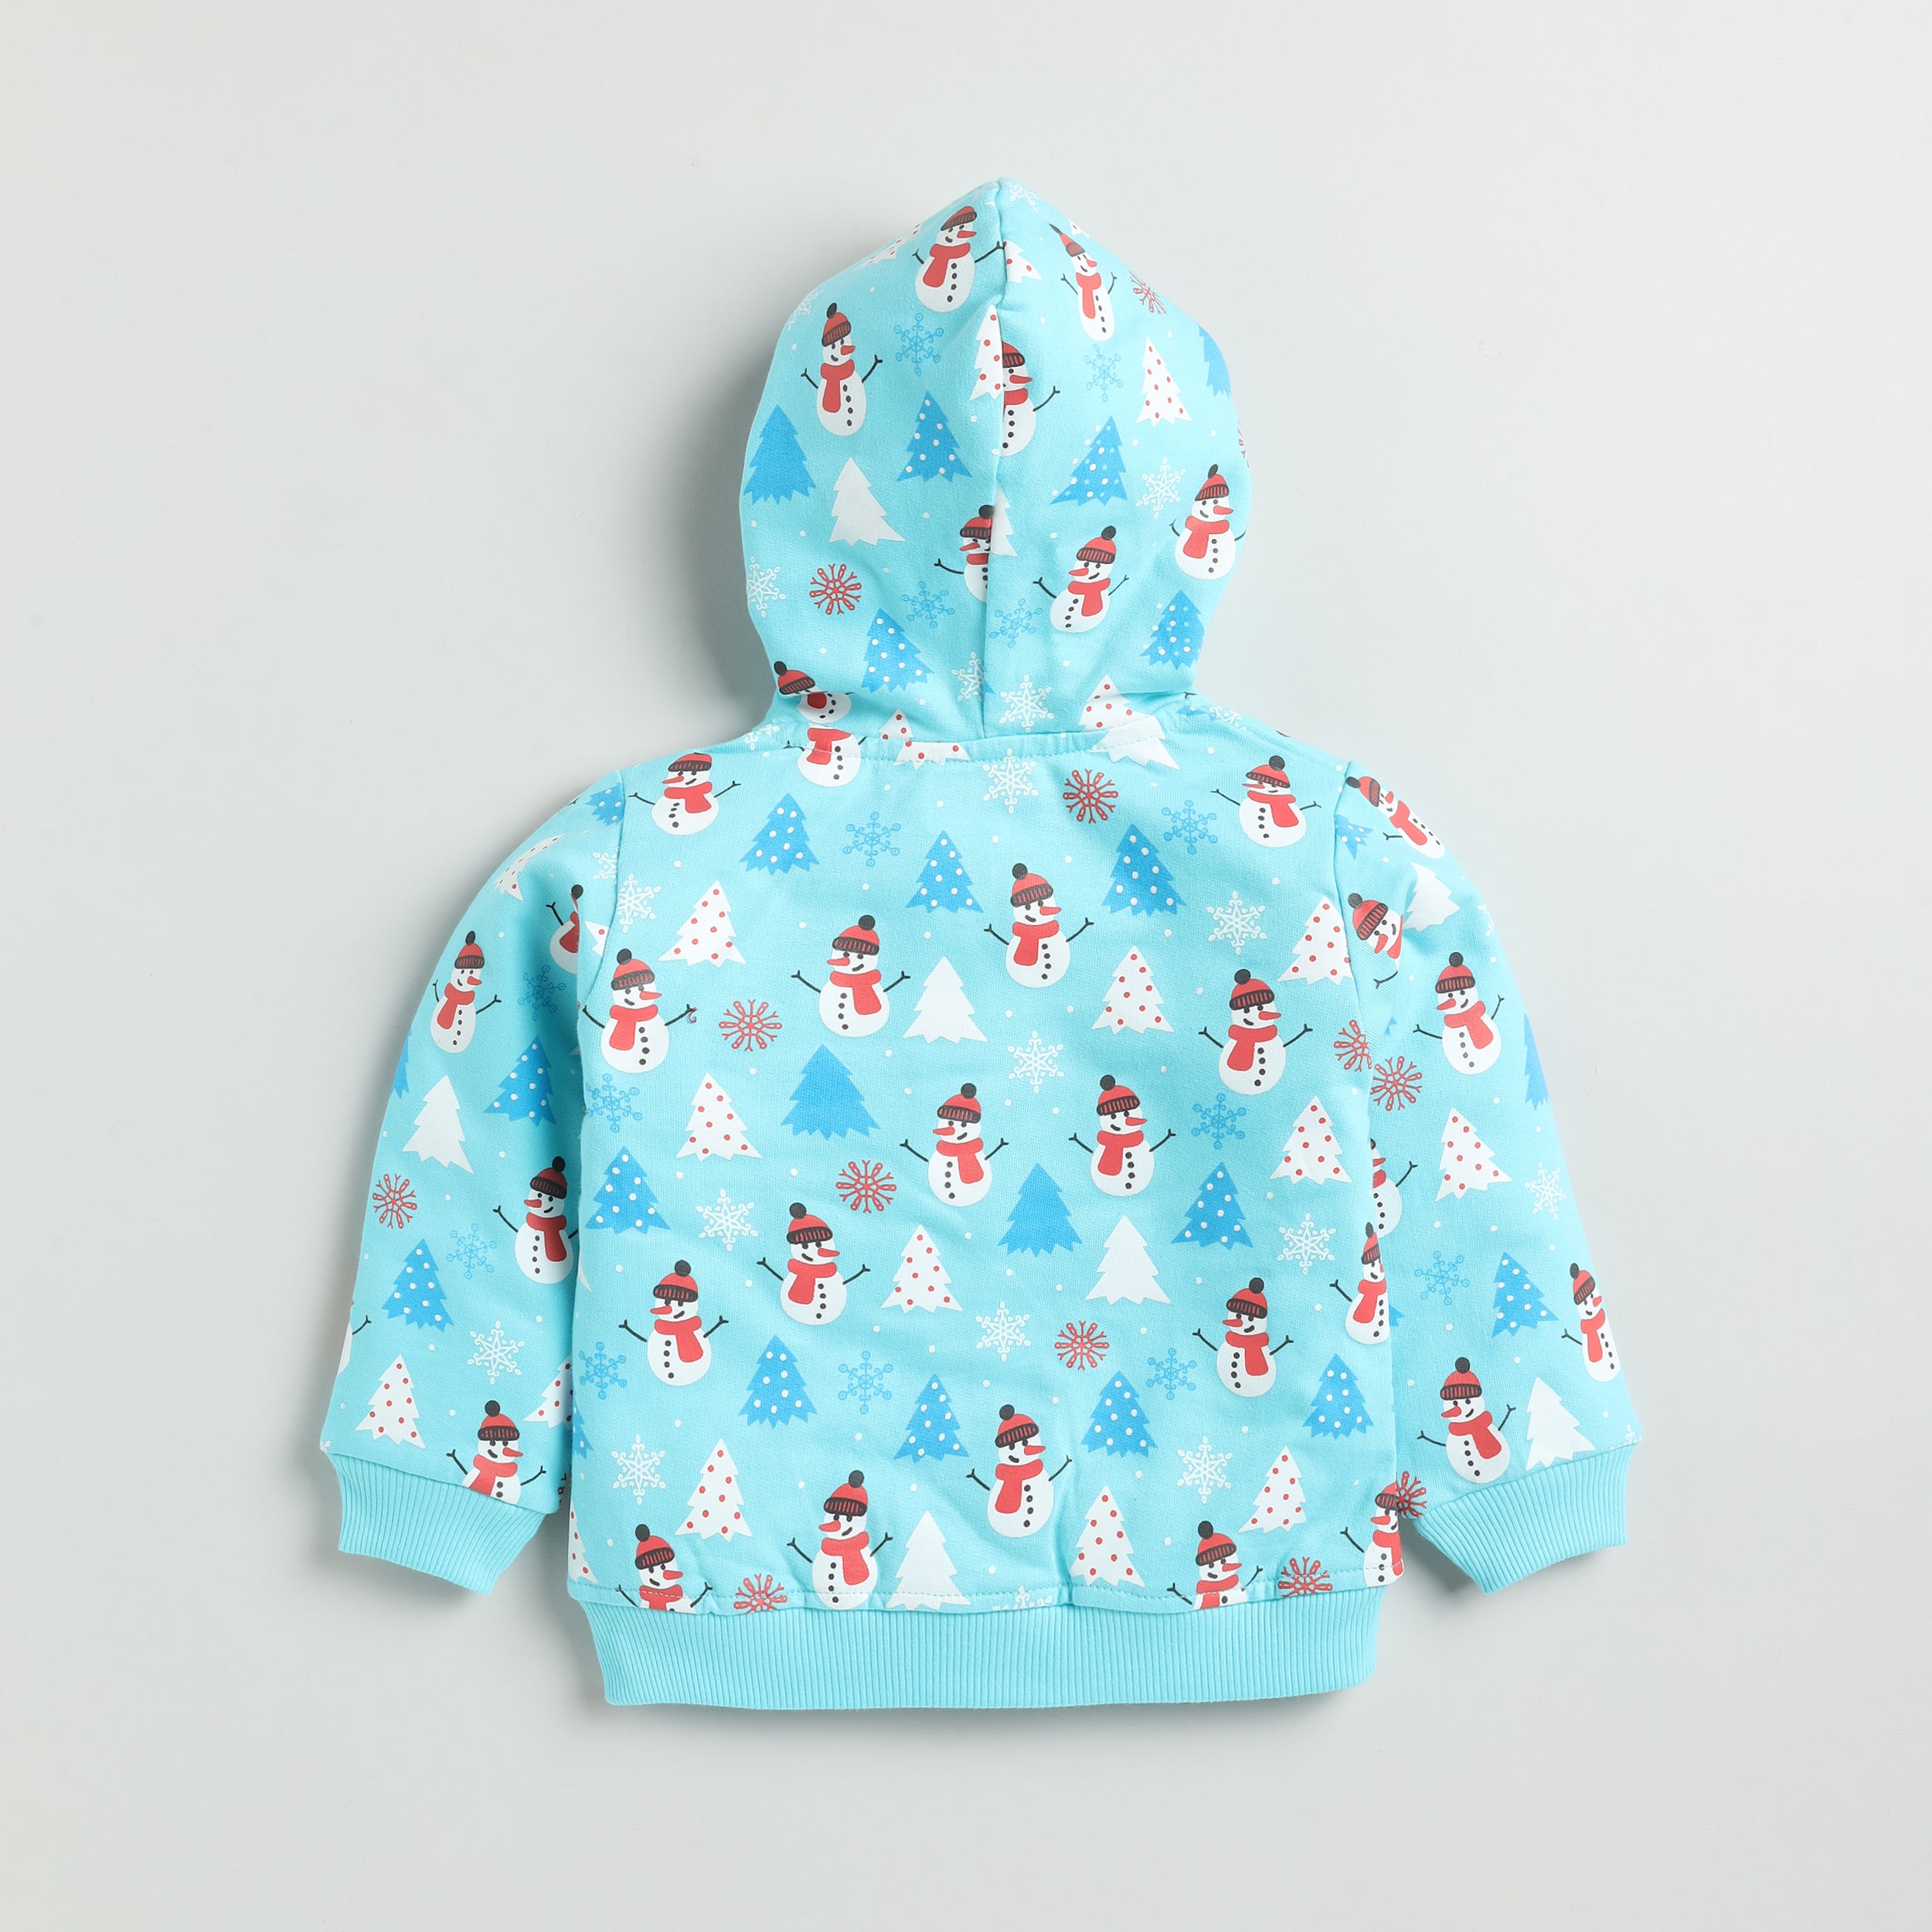 Snuggly Monkey Snowman Print Full-Sleeves Hooded Sweatshirt